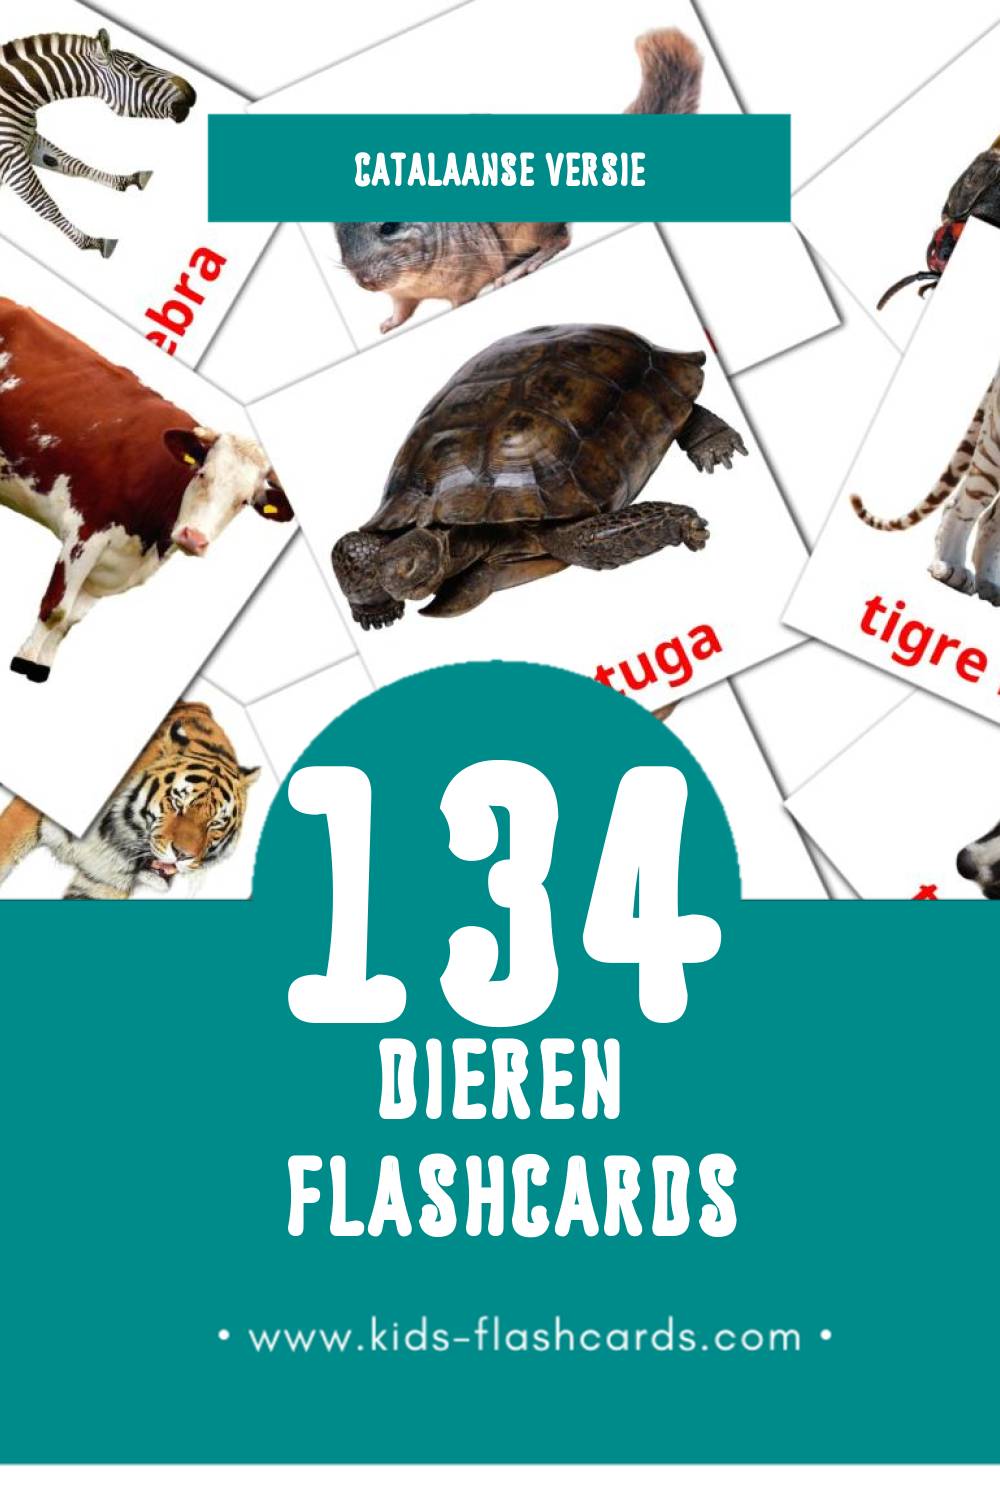 Visuele Animals Flashcards voor Kleuters (134 kaarten in het Catalaans)